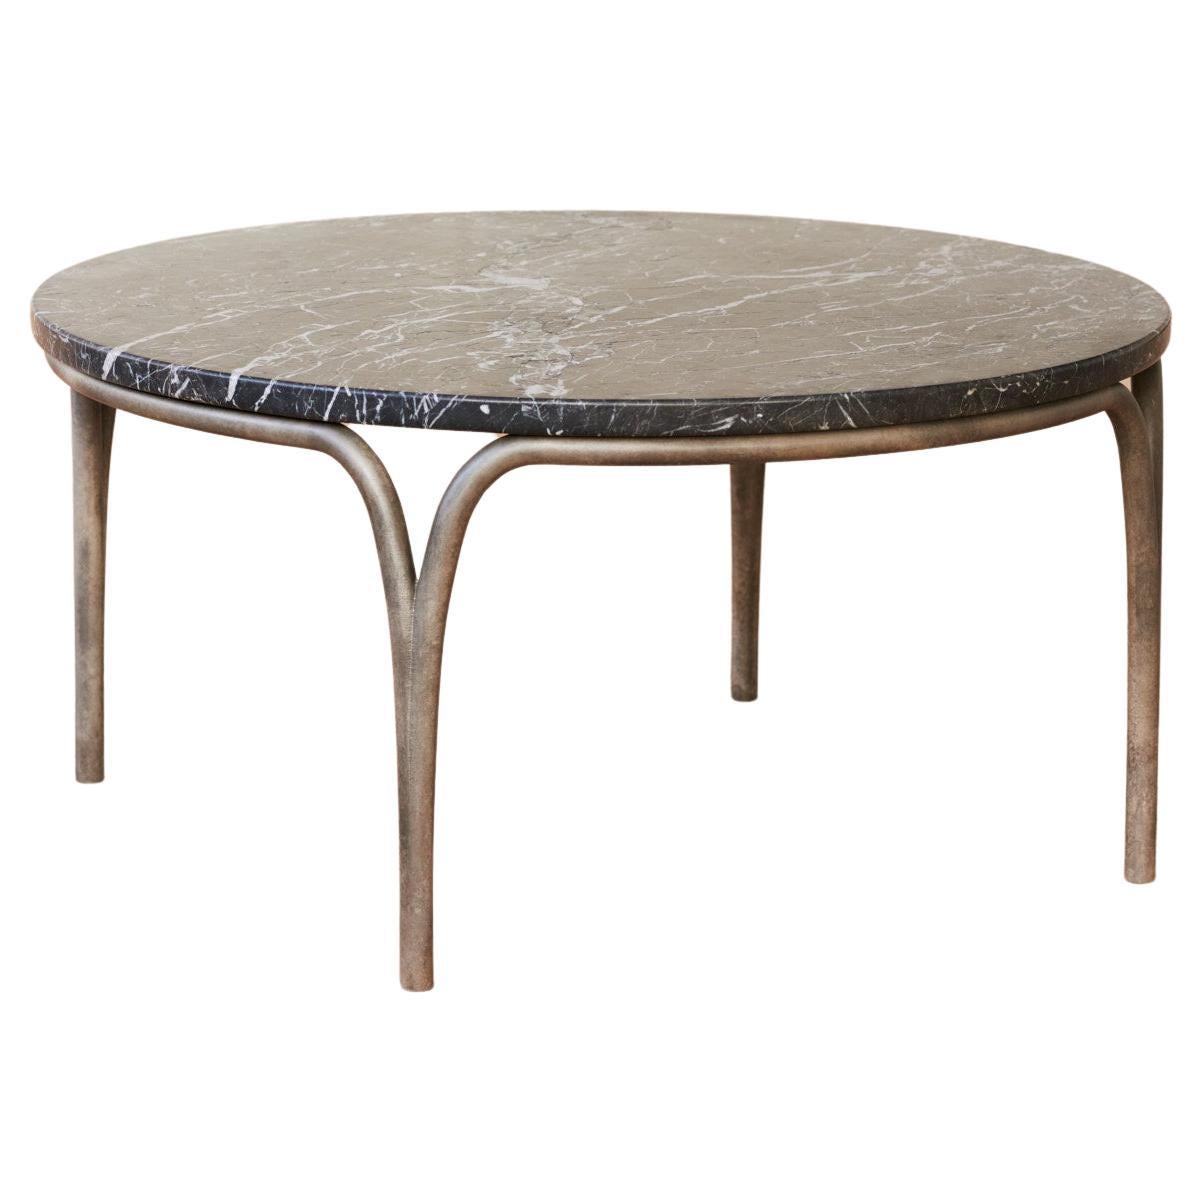 Table basse cirrus avec plateau de table en marbre